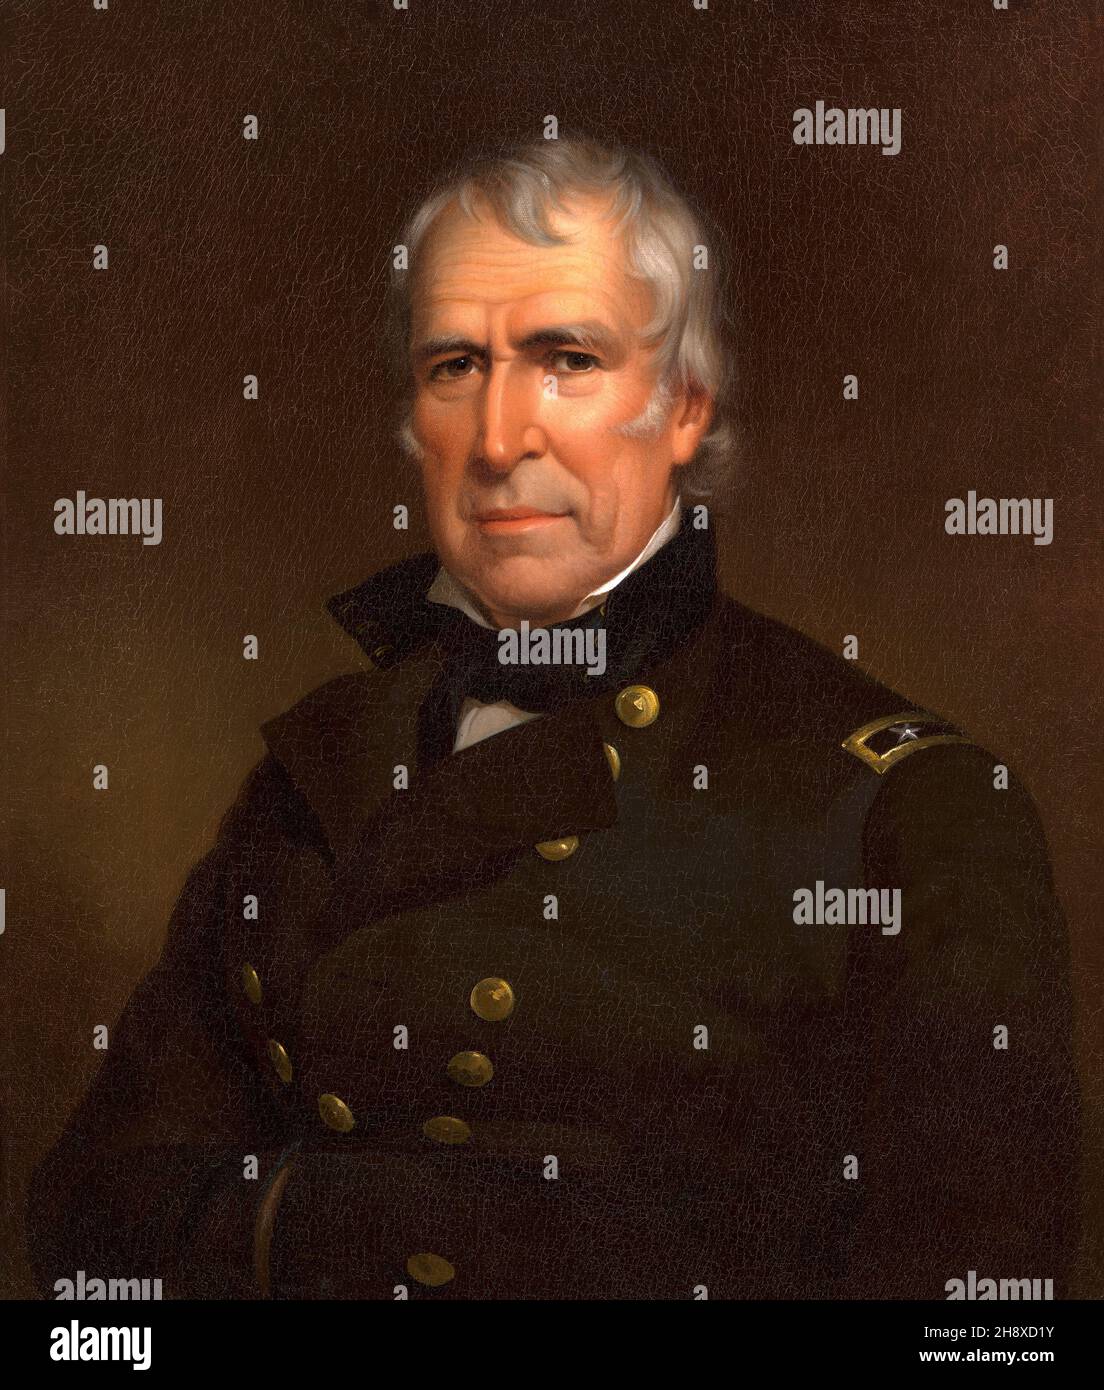 Zachary Taylor (1784-41850), 12e président des États-Unis 1849-50, Portrait, peinture à l'huile sur toile par James Reid Lambdin, 1848 Banque D'Images